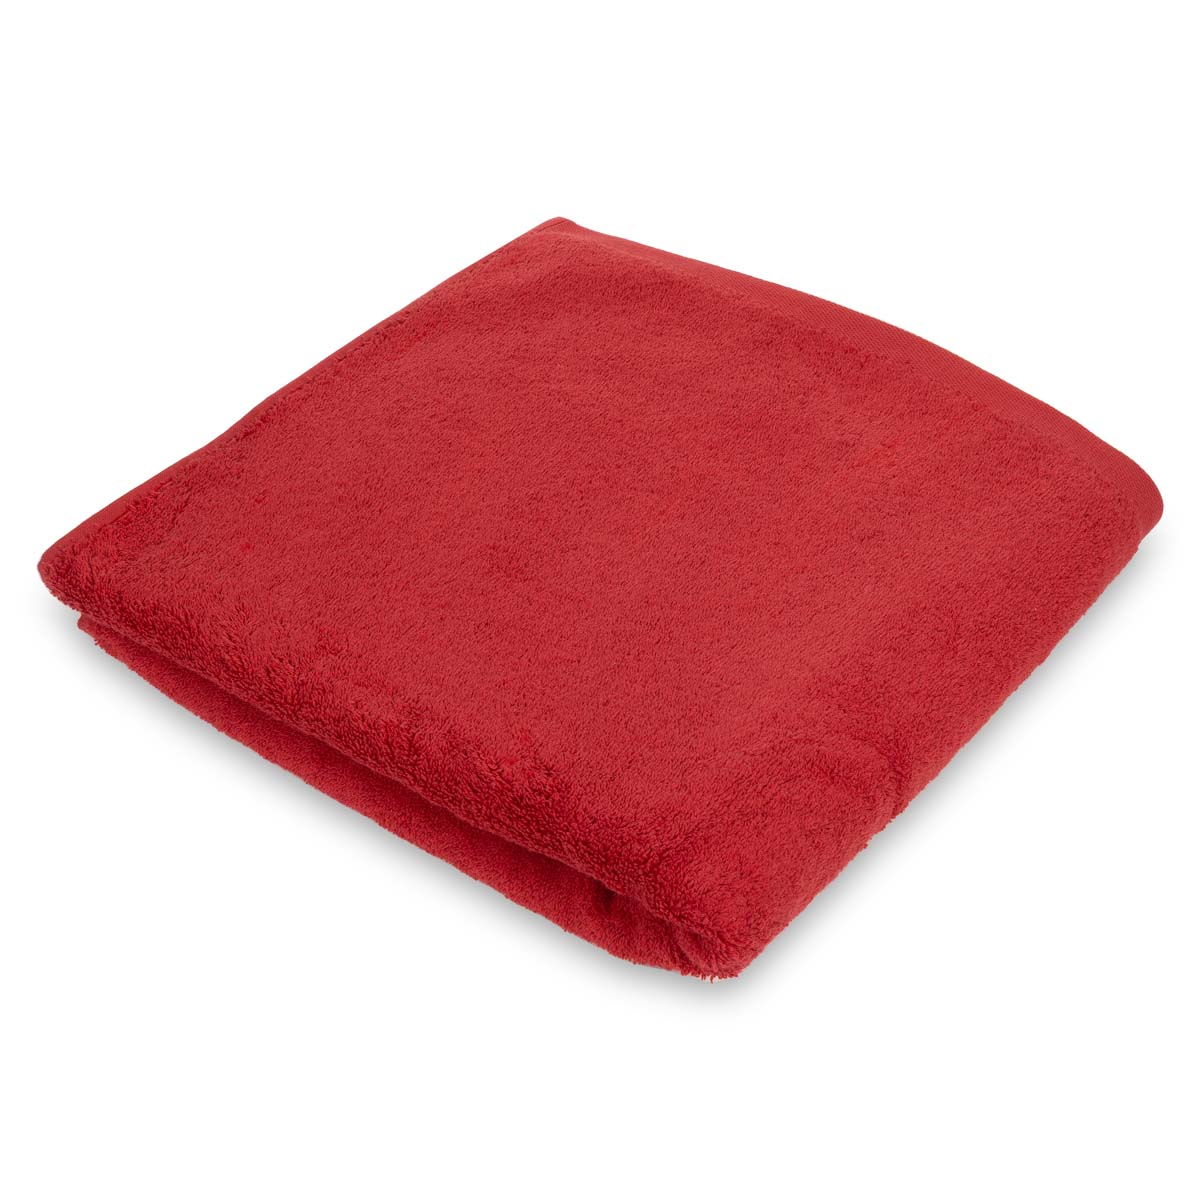 Полотенце махровое Lameirinho Aqua 70x140см, цвет красный полотенце vossen pure 50x100см красный